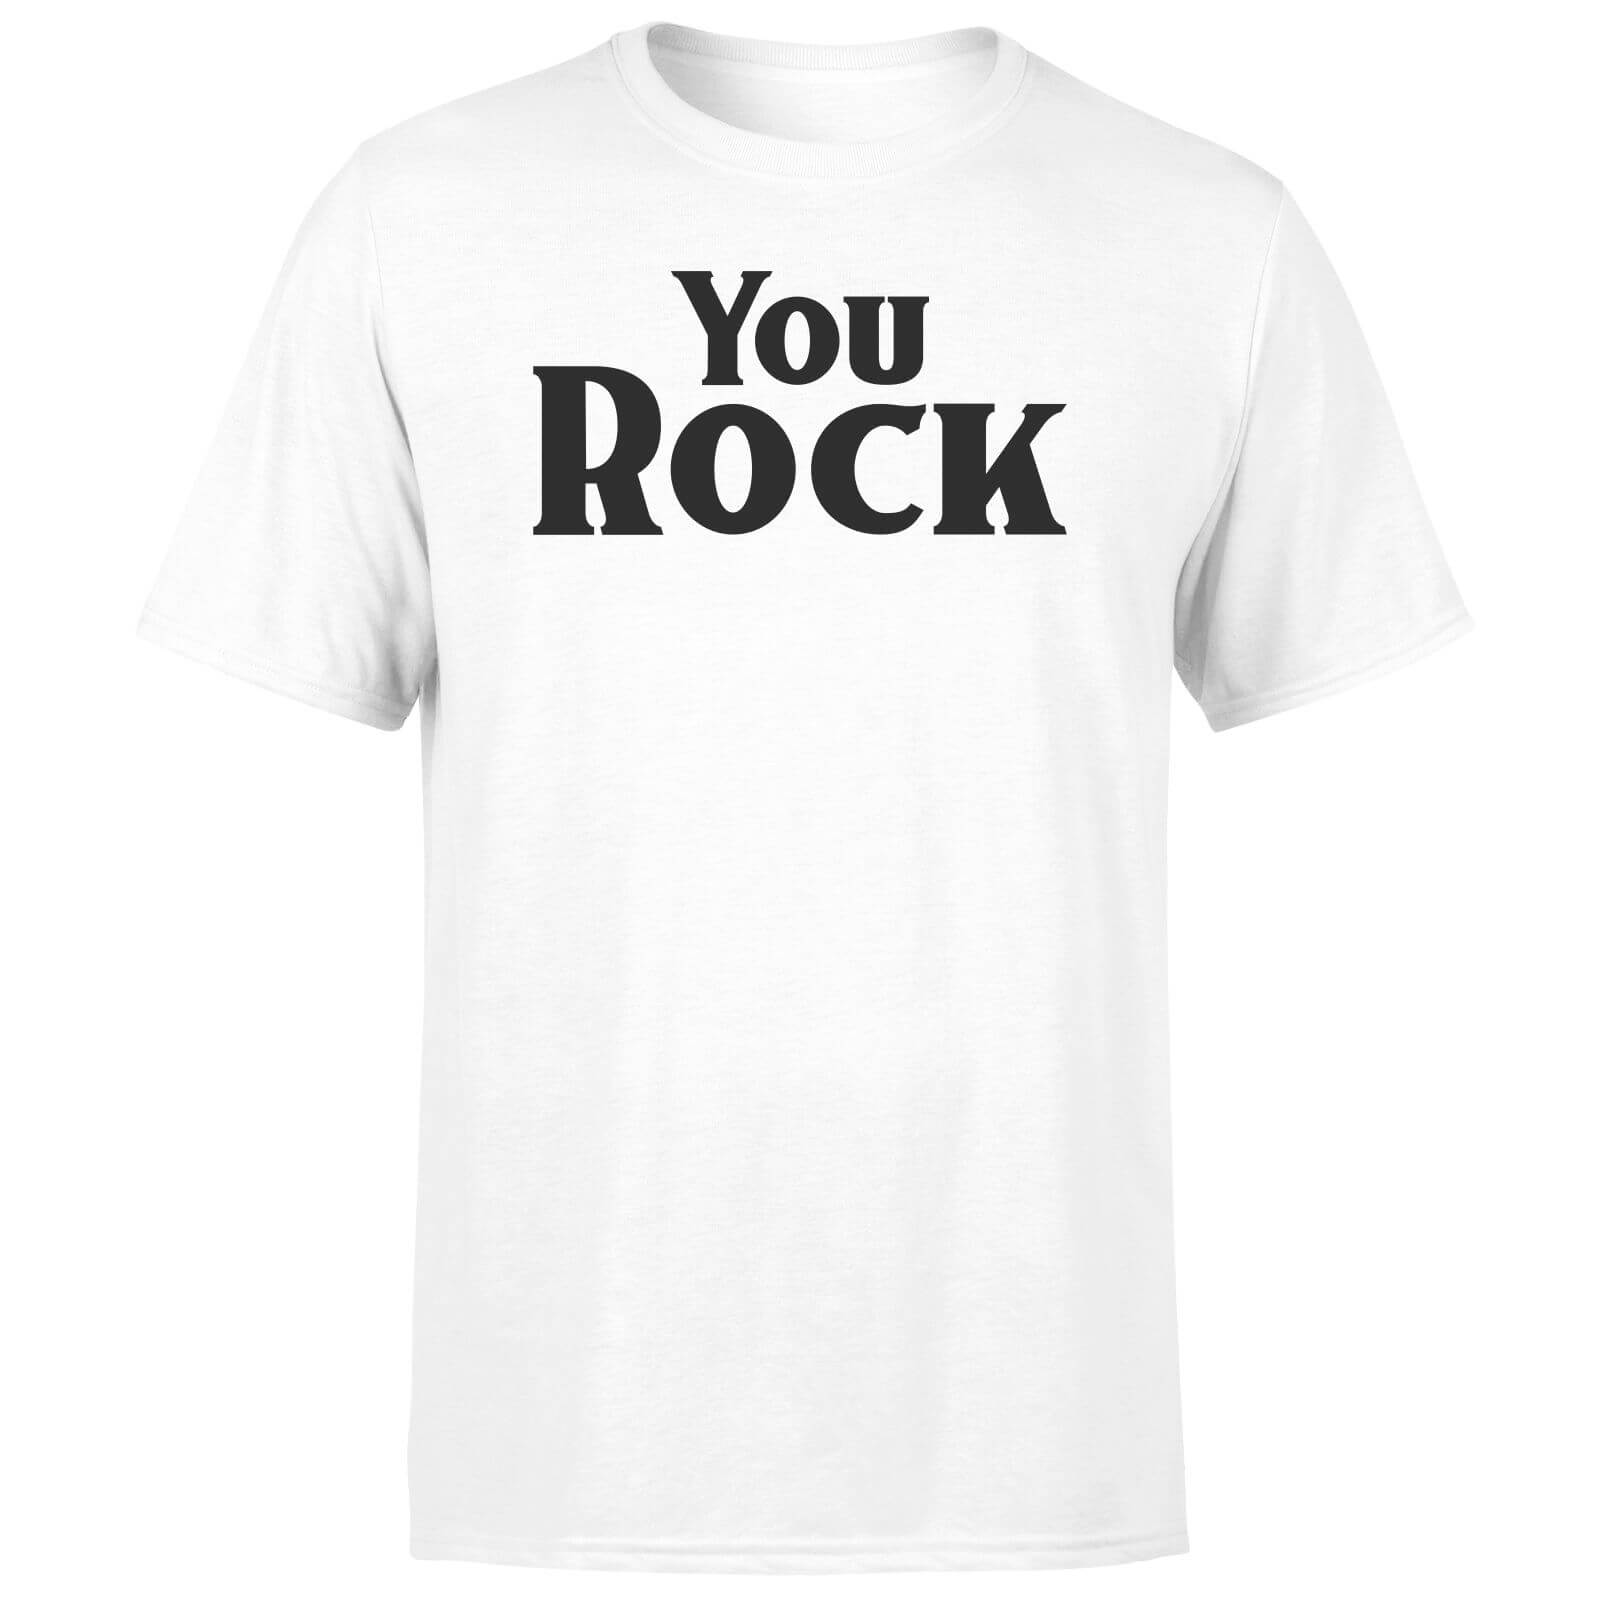 You Rock Men's T-Shirt - White - XS - White